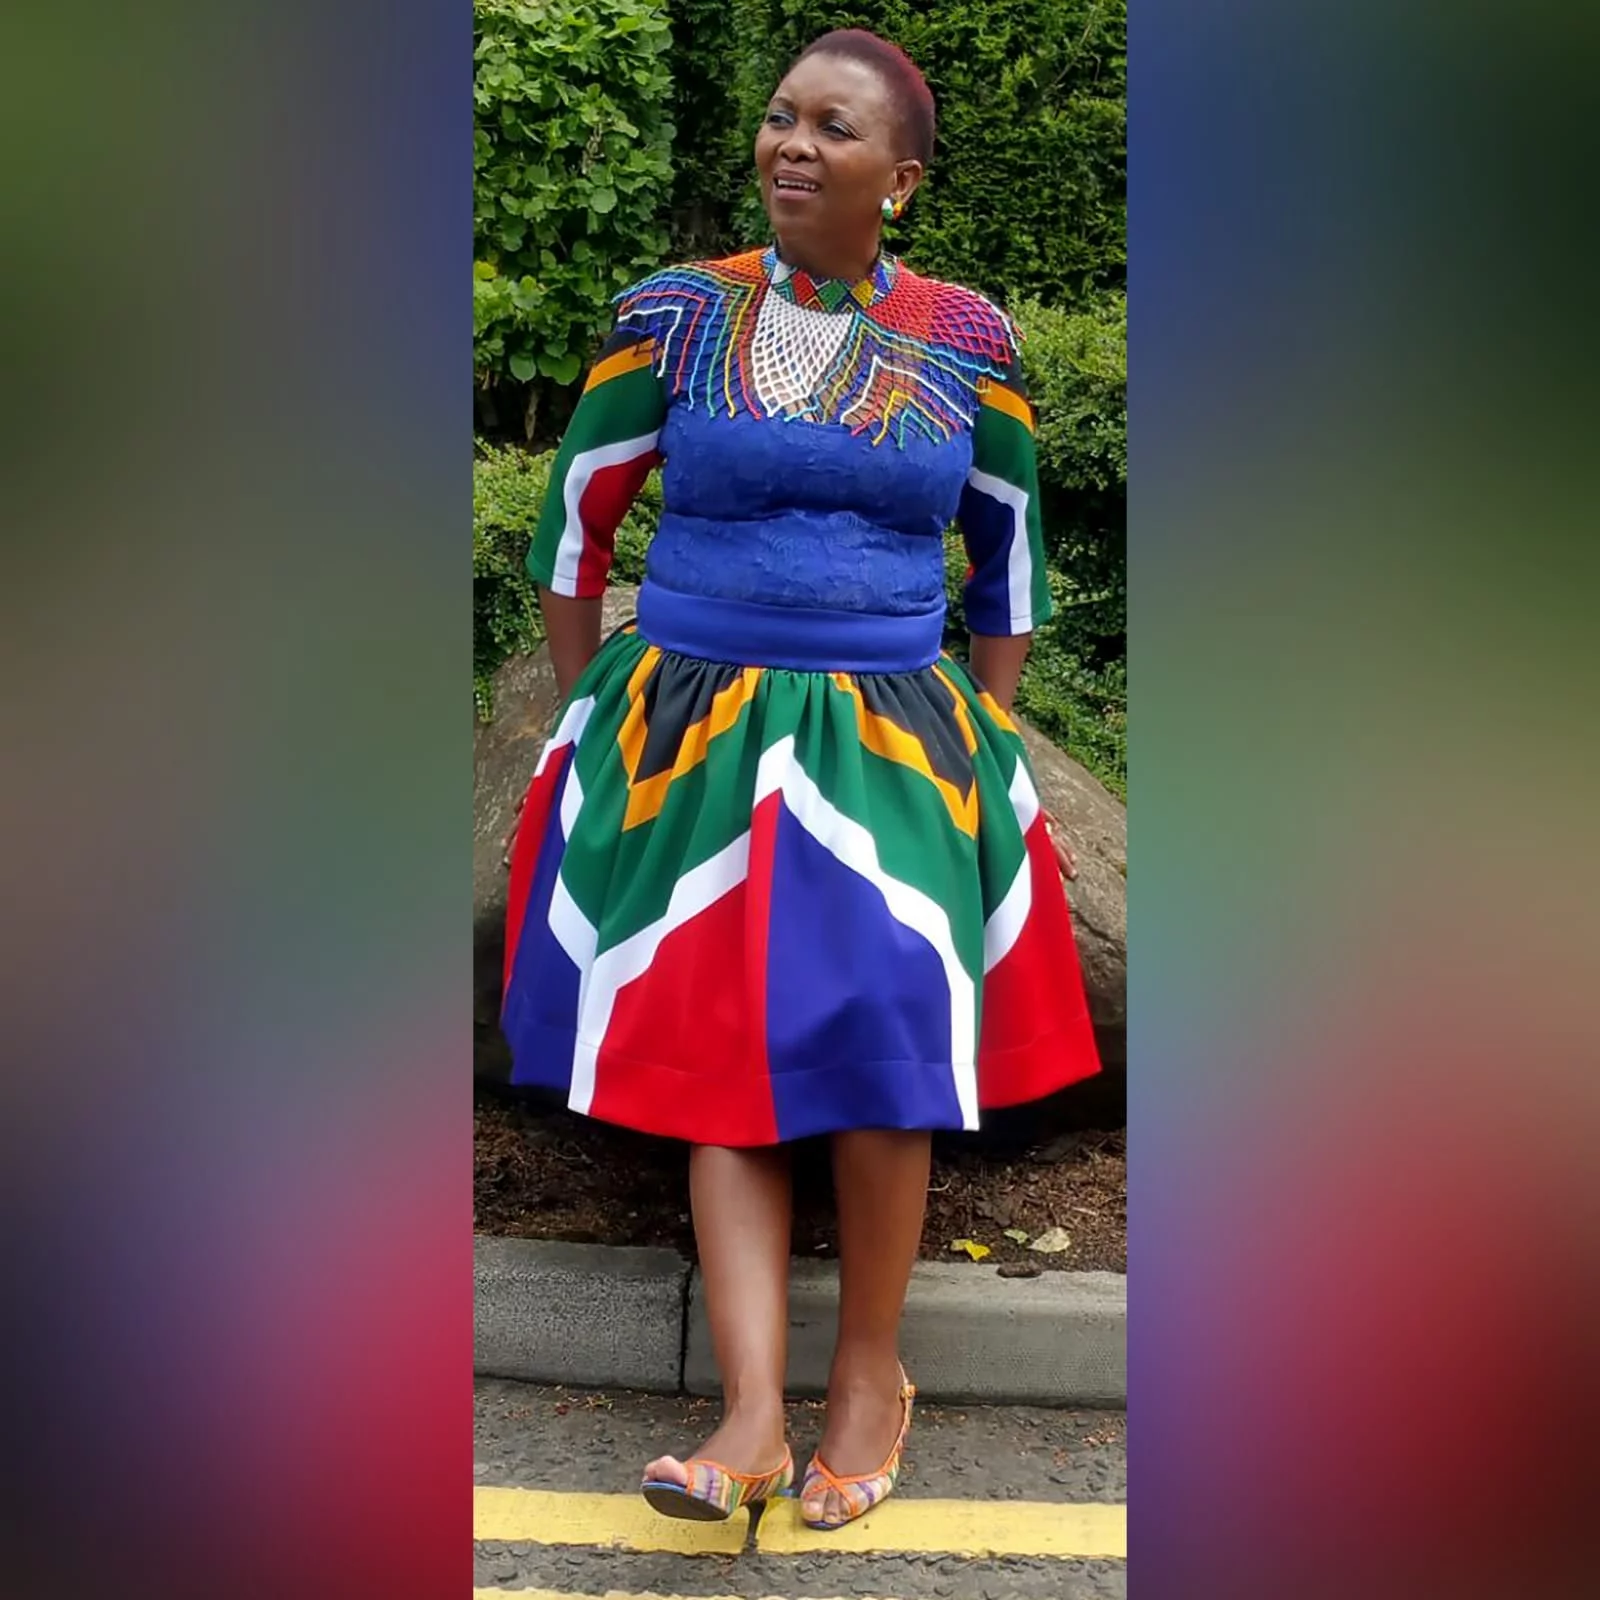 Vestido tradicional curto de bandeira com renda 1 vestido tradicional curto de bandeira de africa do sul azul roial. Com mangas de bandeira africa do sul e um corpete de renda. Vestido tradicional para a graduação.